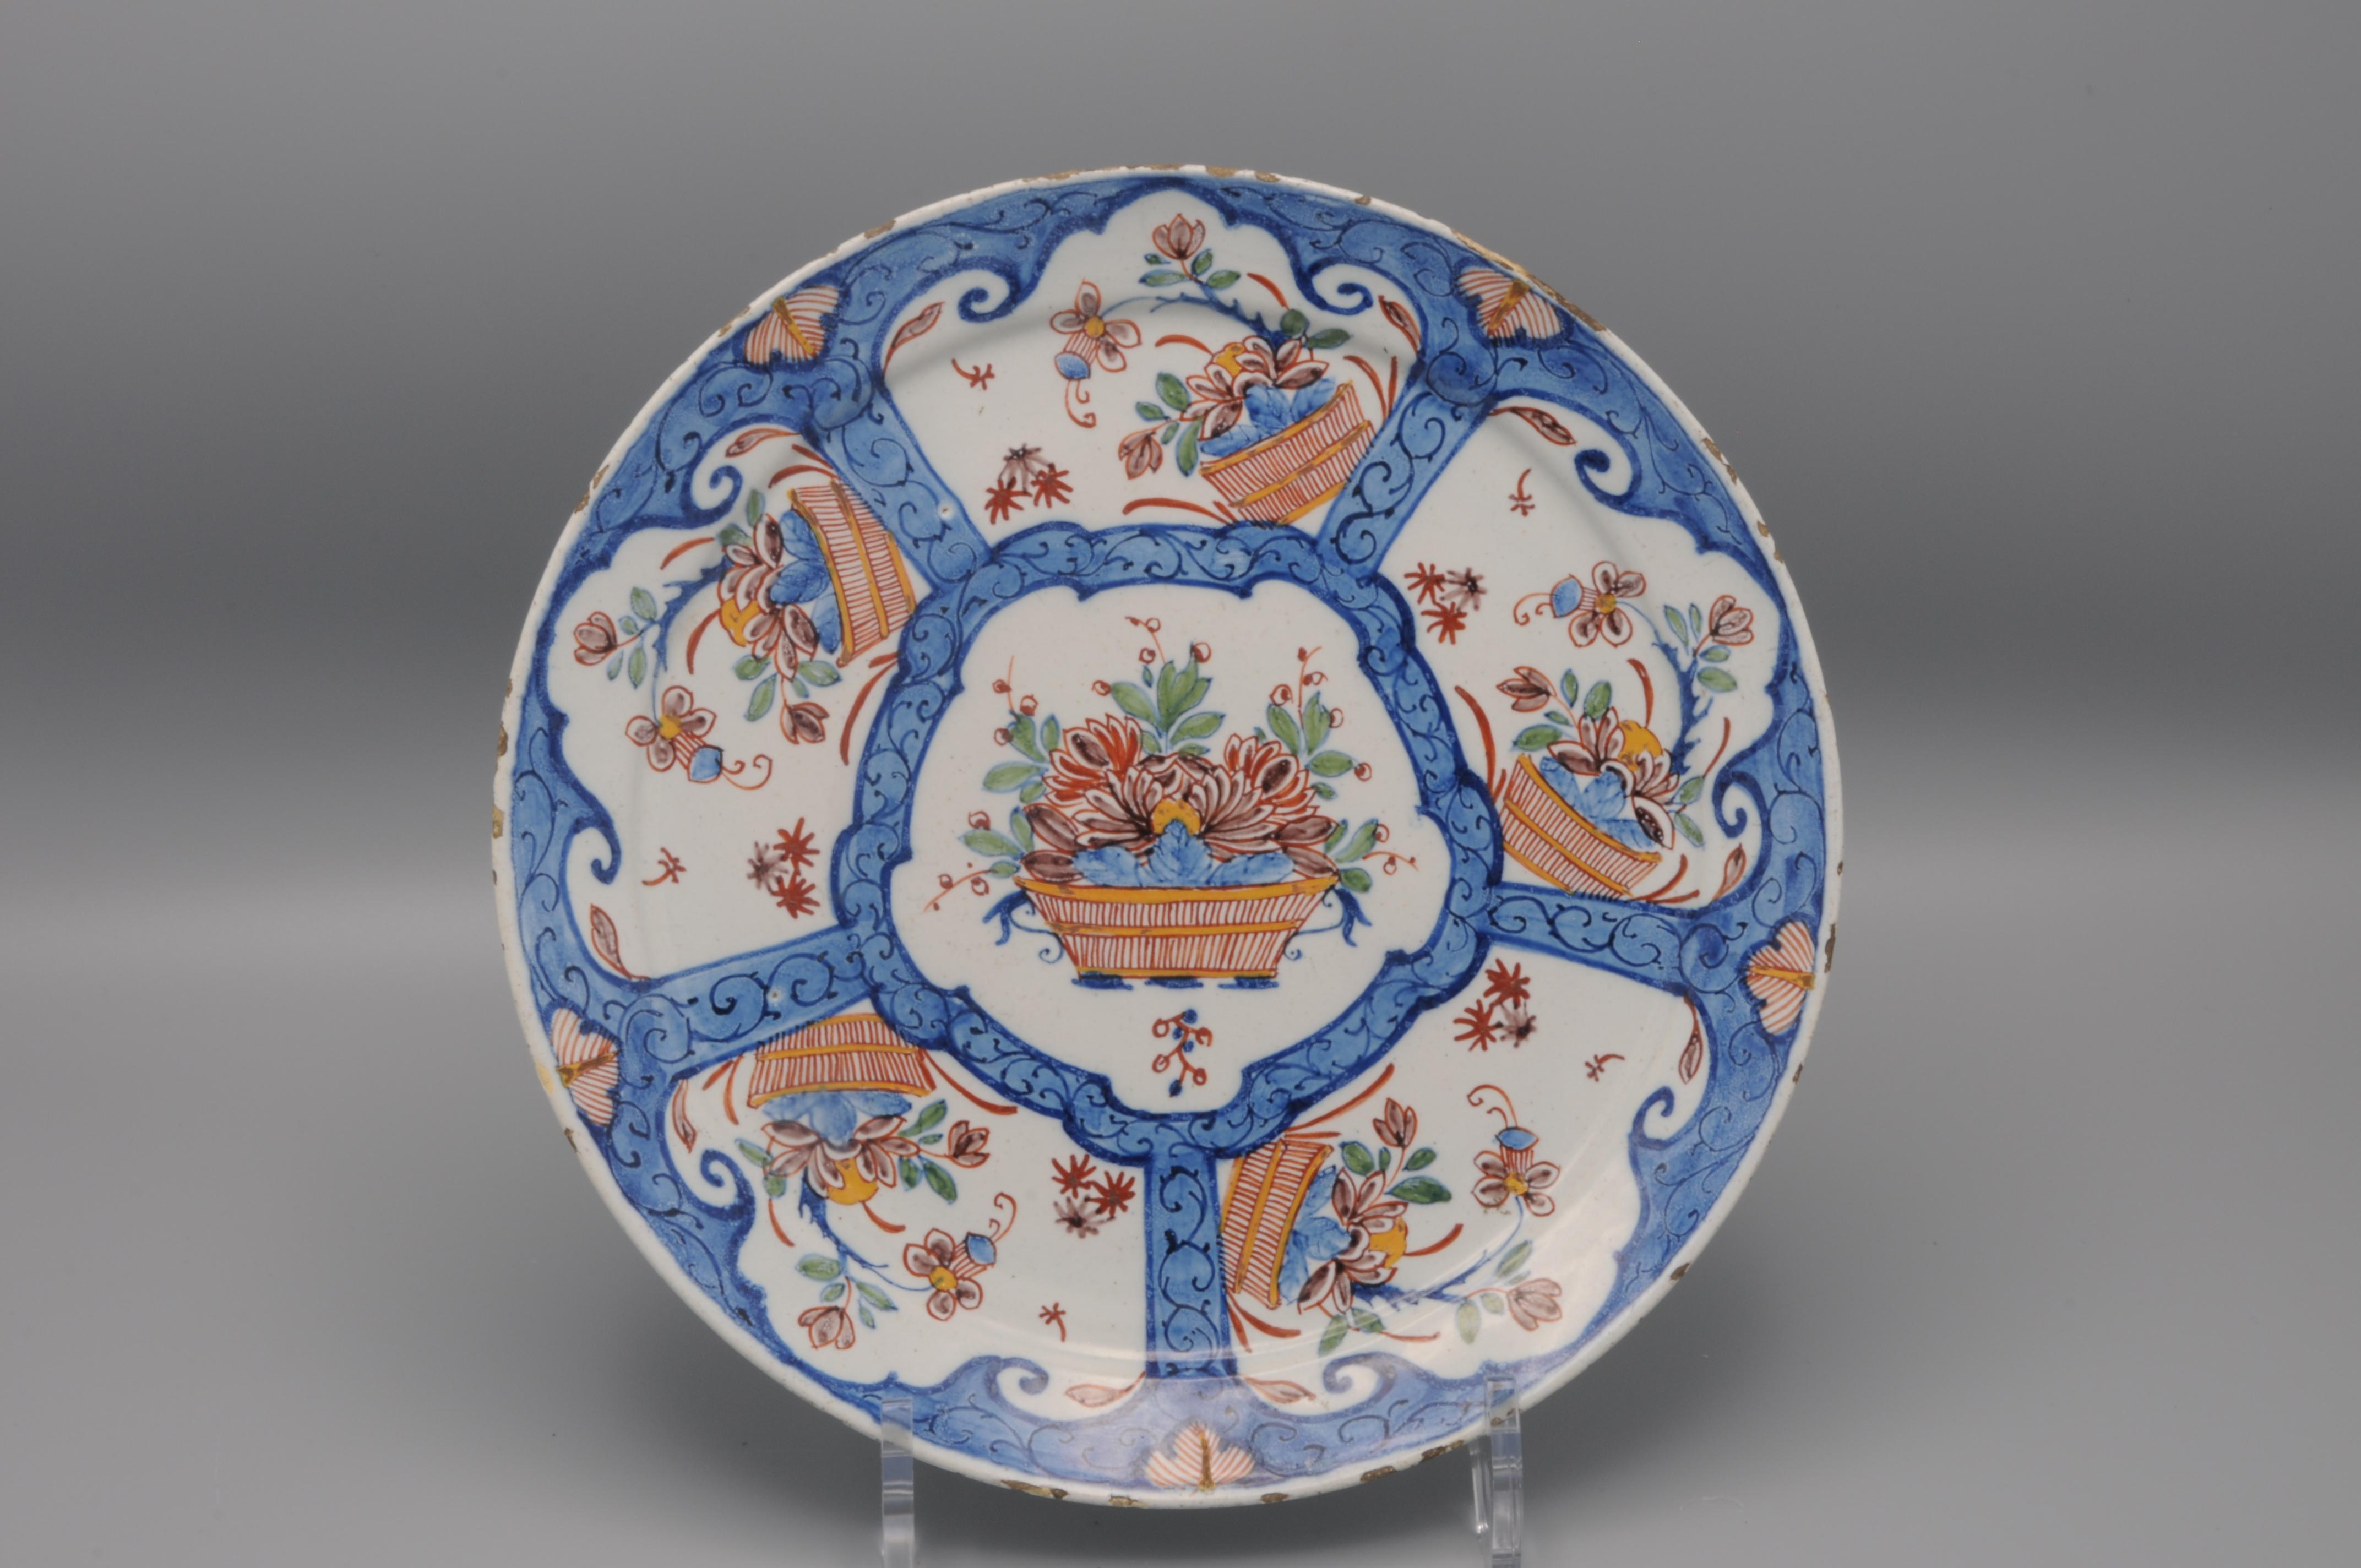 Assiette en faïence bleue du milieu du 18e siècle avec un décor central de paniers de fleurs, entouré de 5 cartouches avec un décor similaire. 
Marqué 